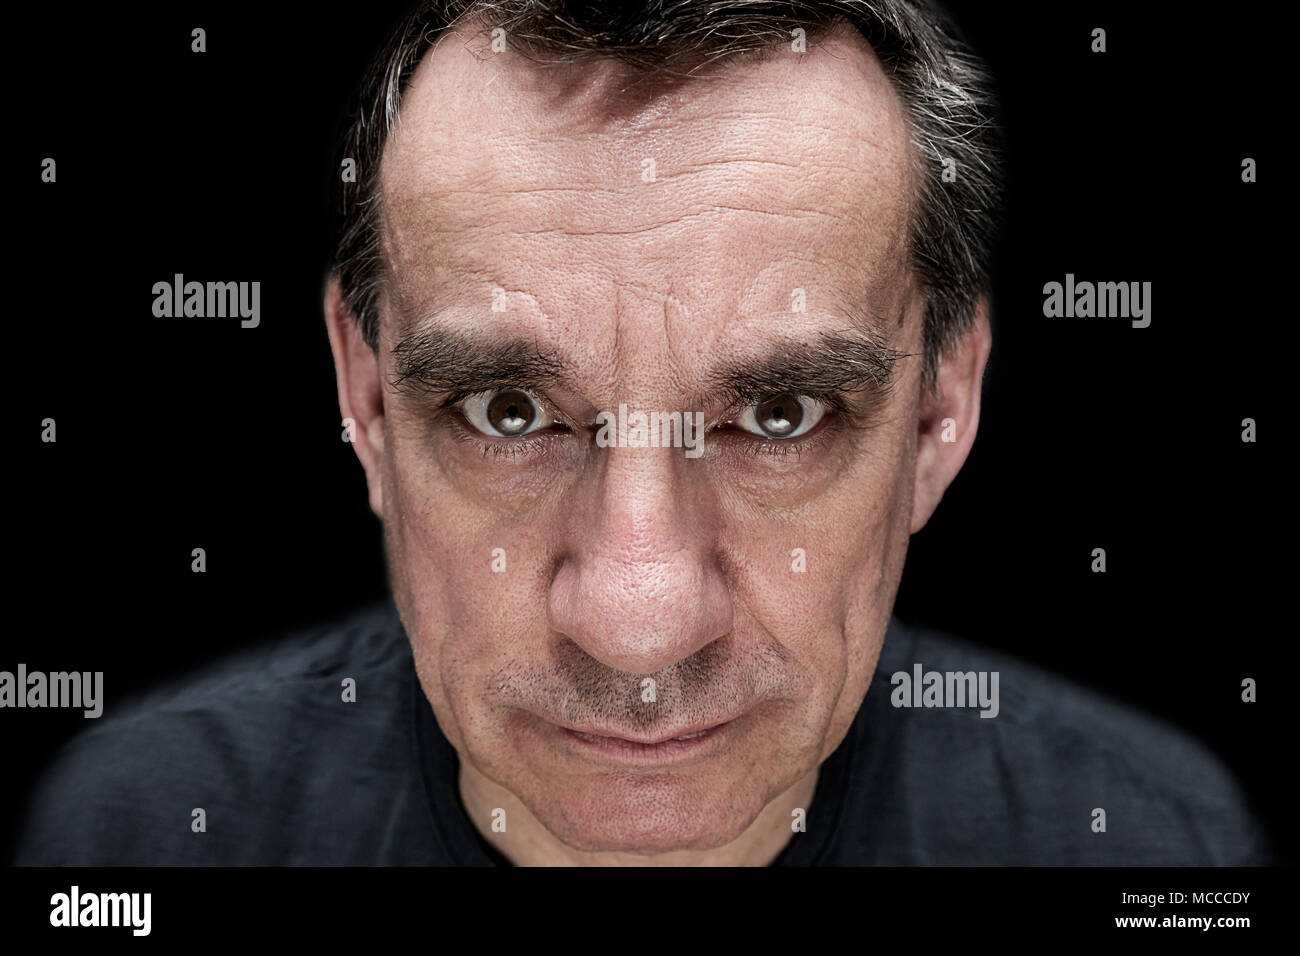 Dramatisch hoher Kontrast Portrait von Angry bedrohlichen Mann Stockfoto